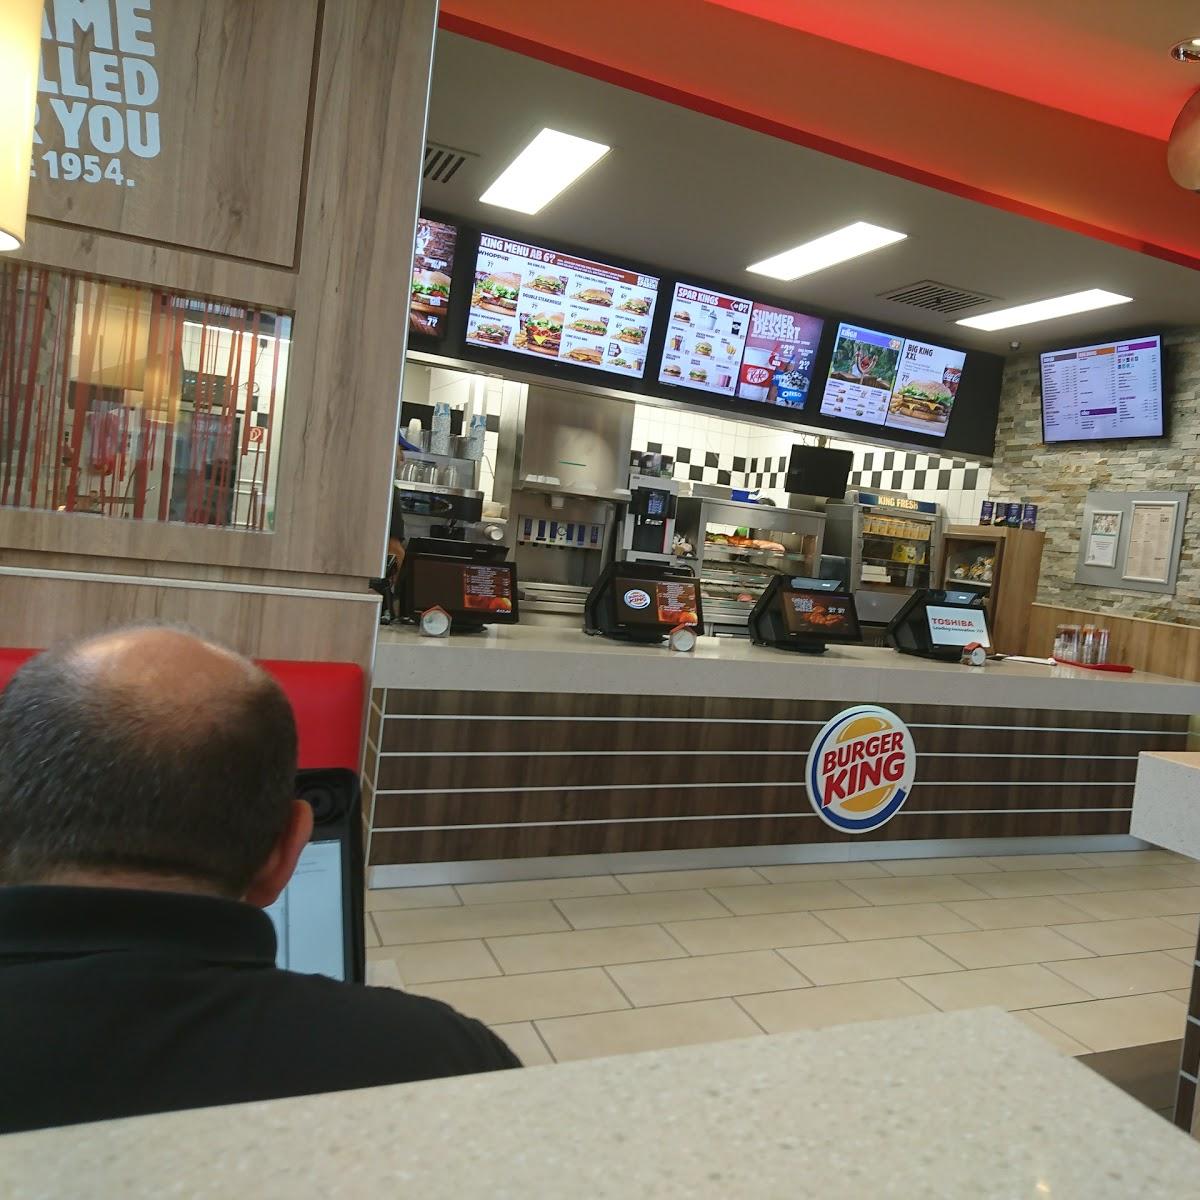 Restaurant "Burger King Biberach" in Biberach an der Riß